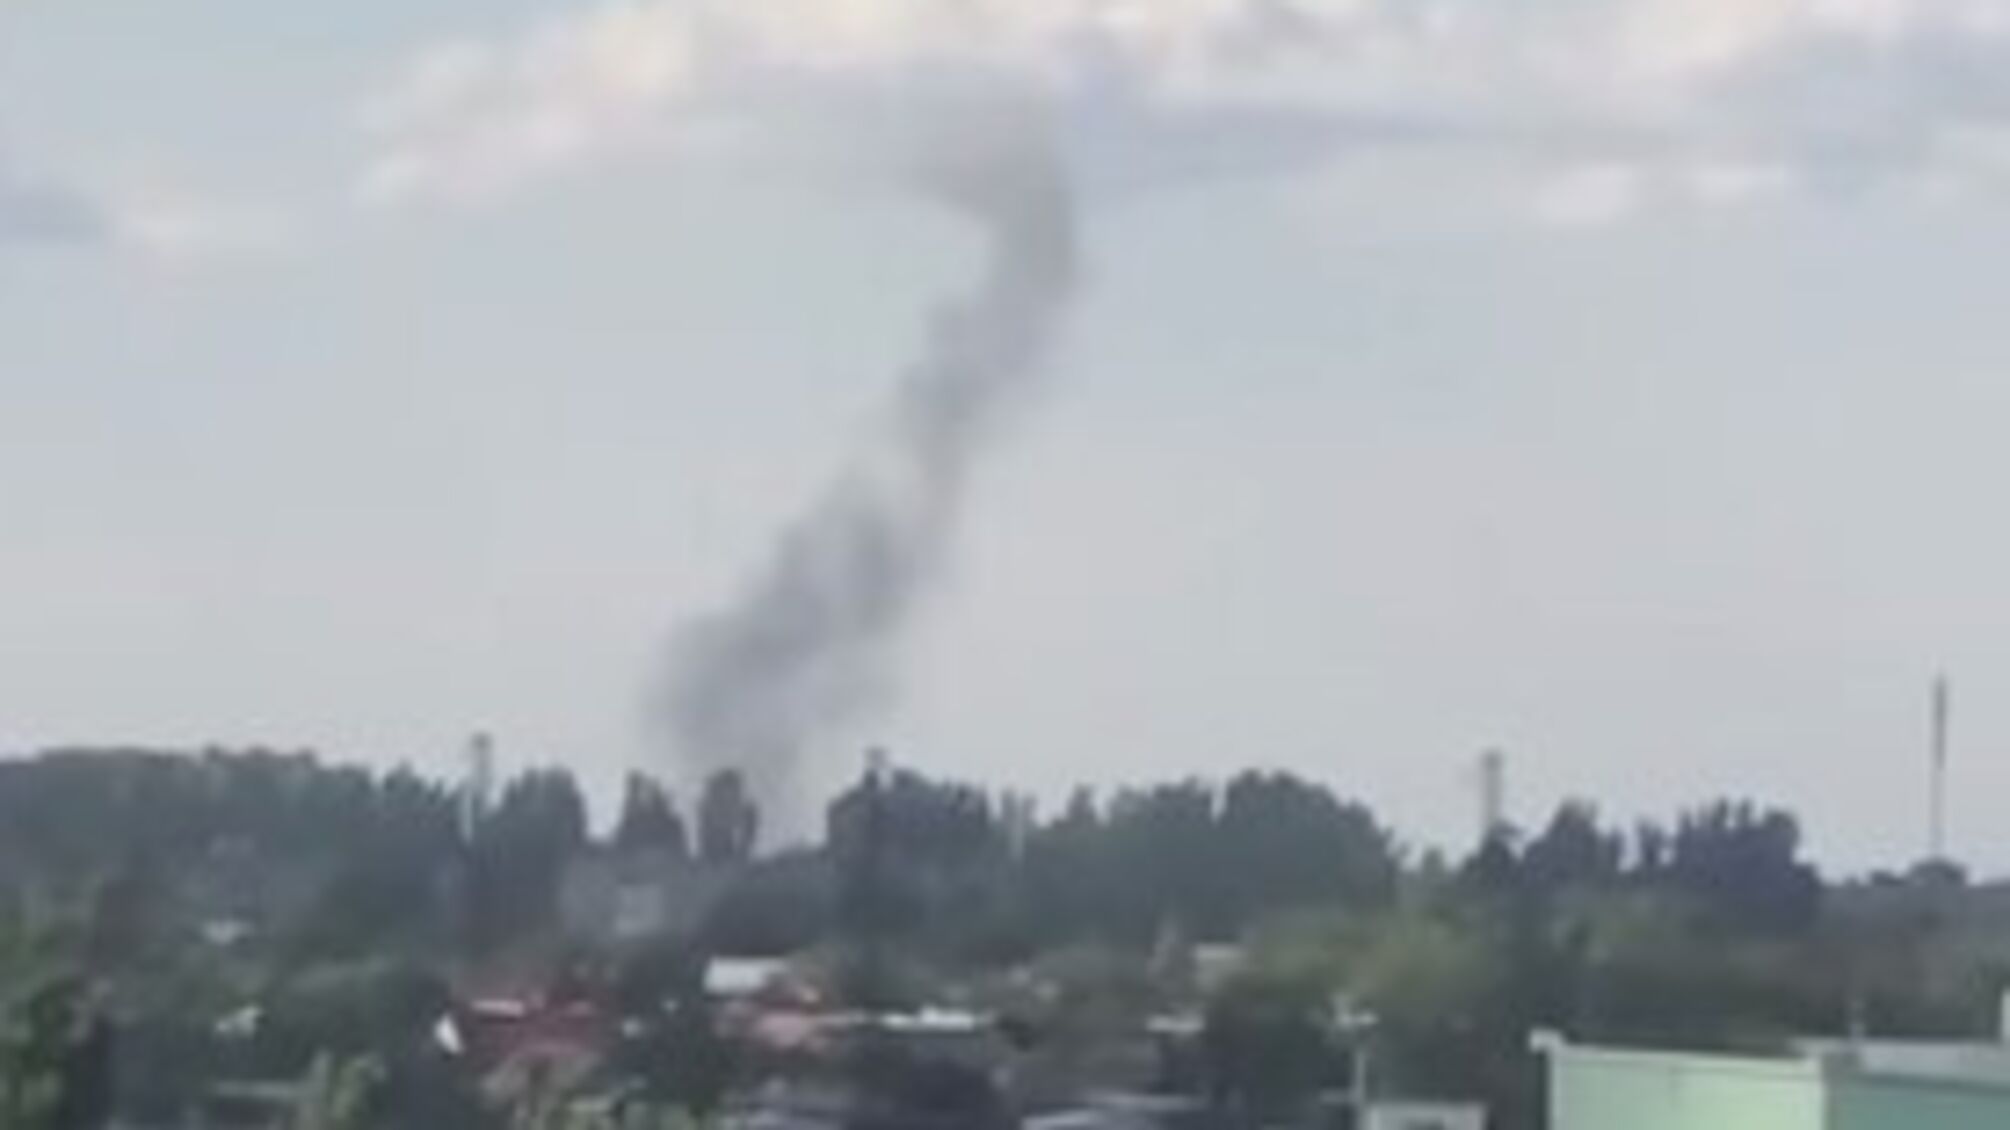 'Хлопок' во временно оккупированном Мелитополе: зафиксирован взрыв в районе аэродрома